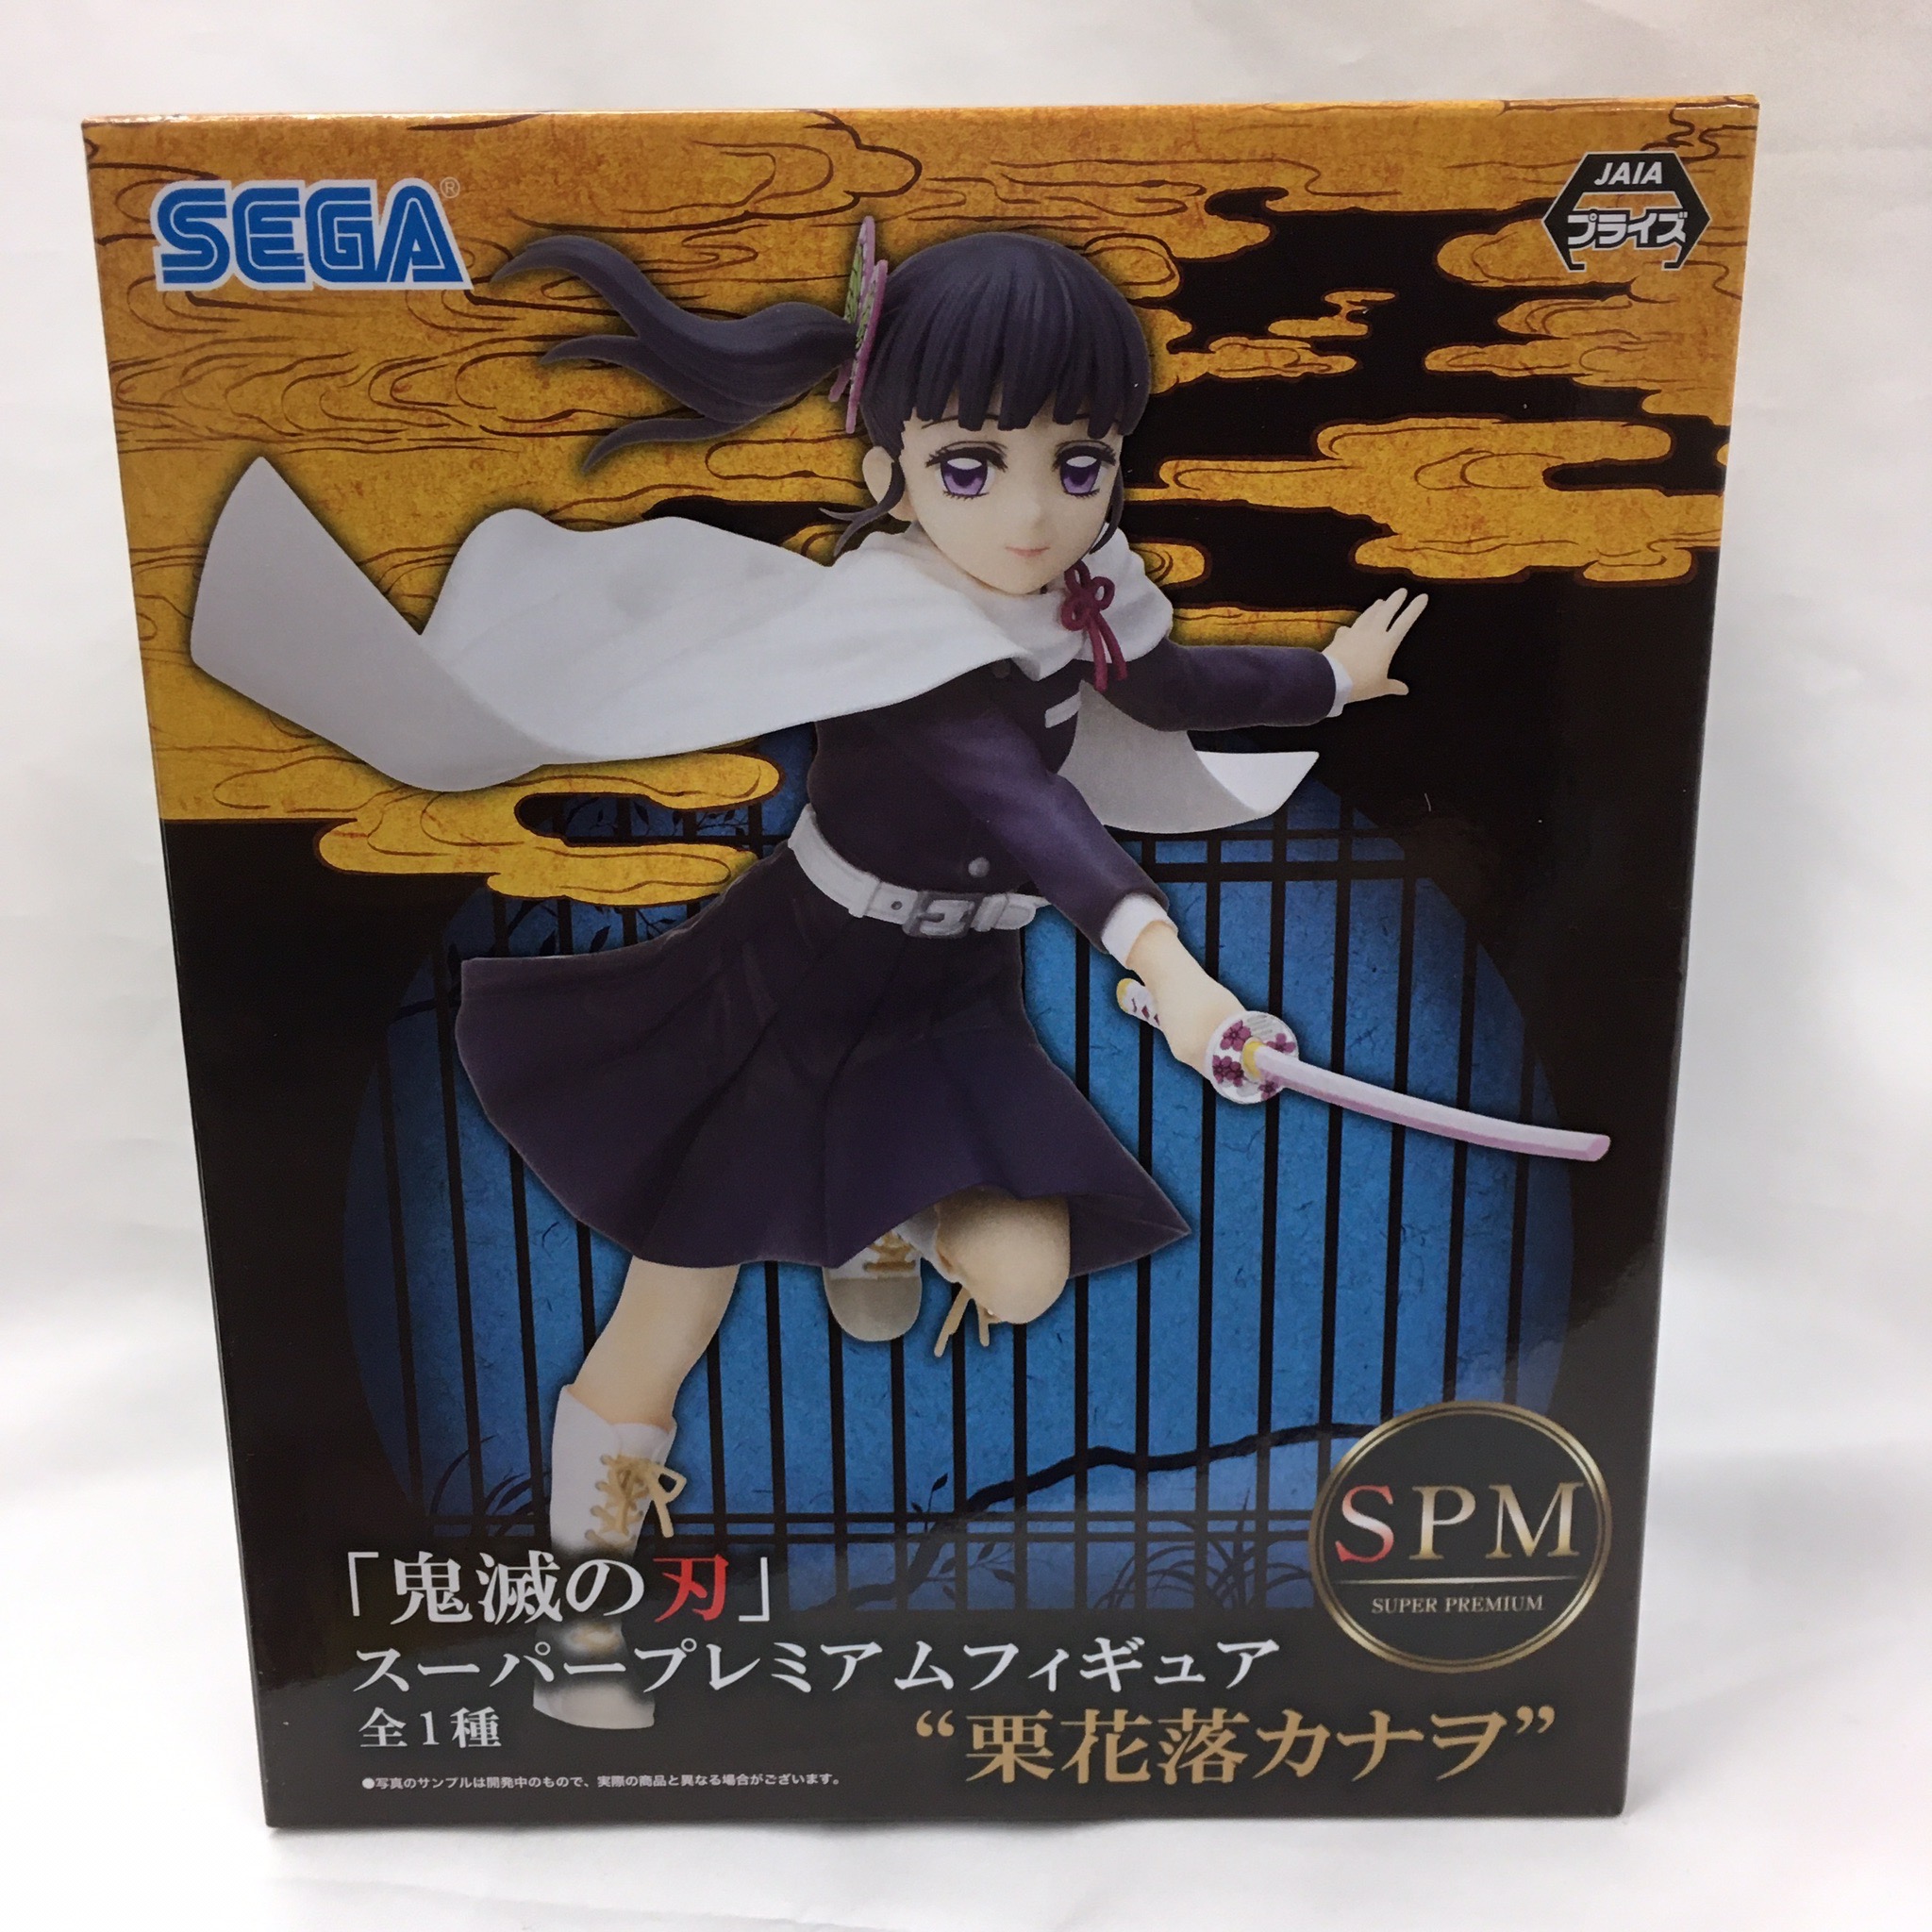 Sega Super Premium Figure Slayer "Kurihana Ochi Kanao" 1059275